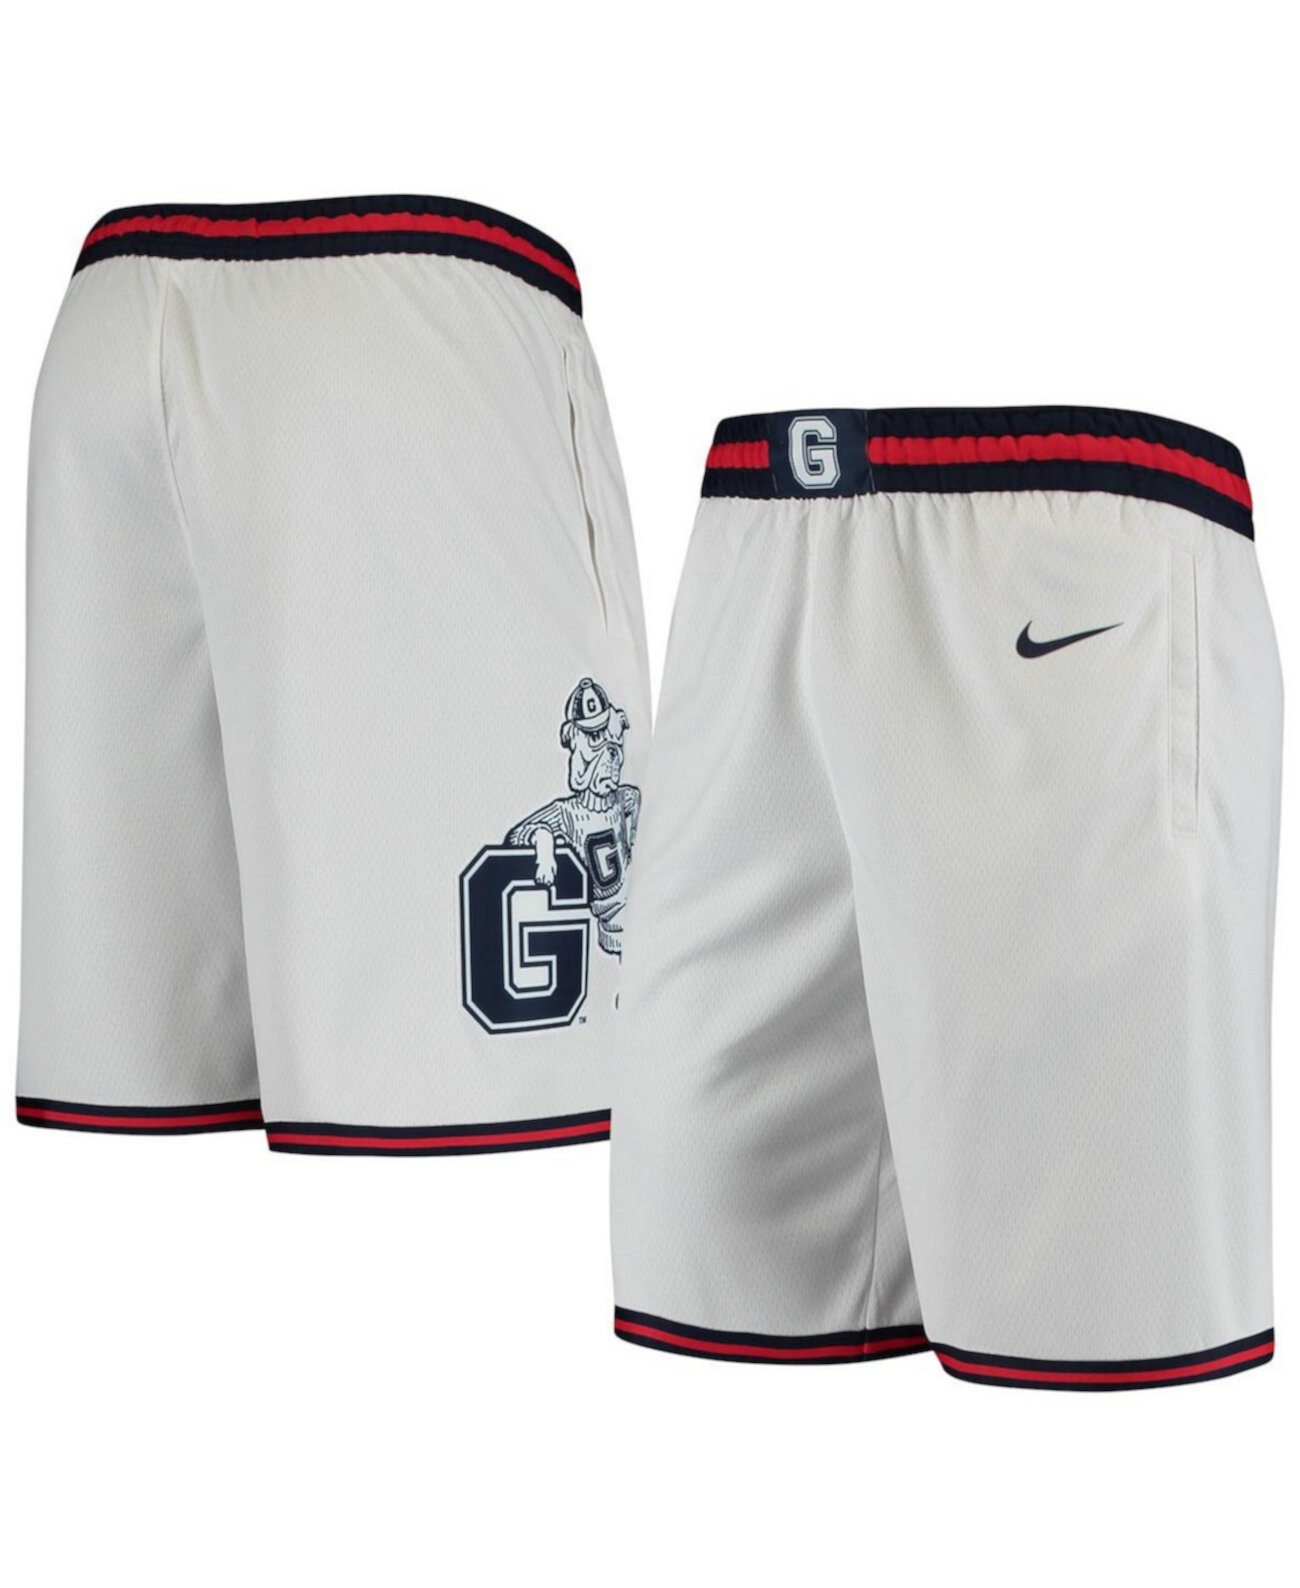 Мужские белые шорты Gonzaga Bulldogs Limited для баскетбола Nike